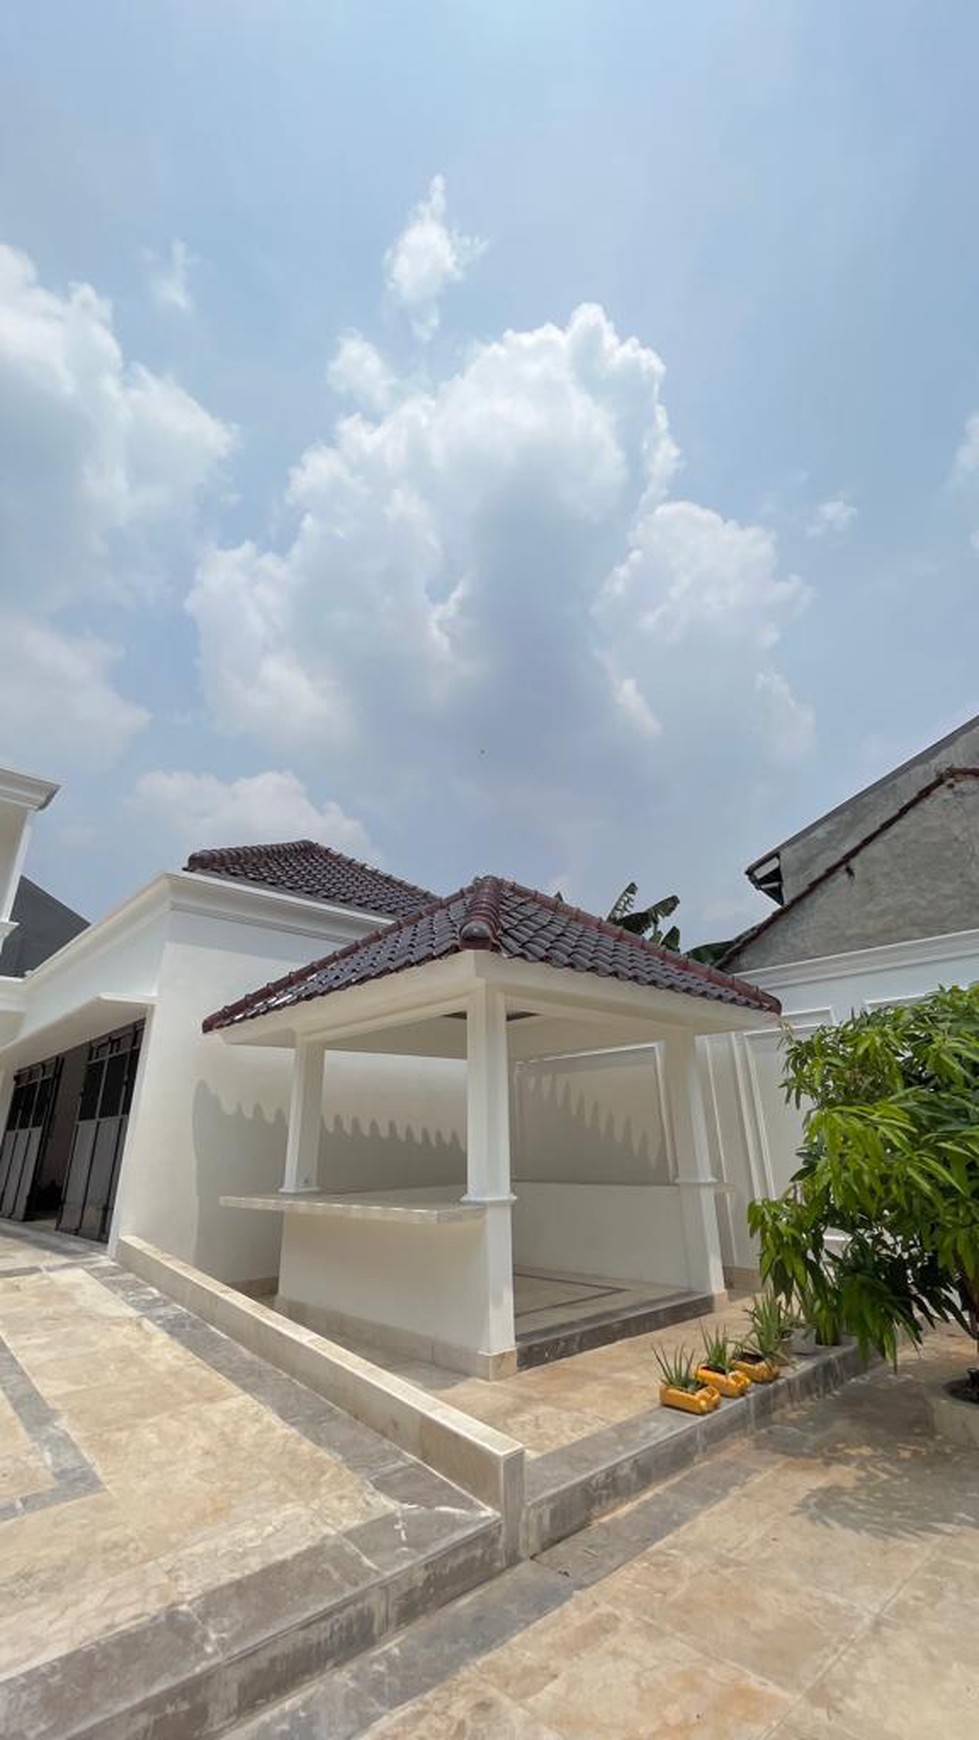 Rumah Bagus Di Perum The 9 Residence Ciganjur Jakarta Selatan